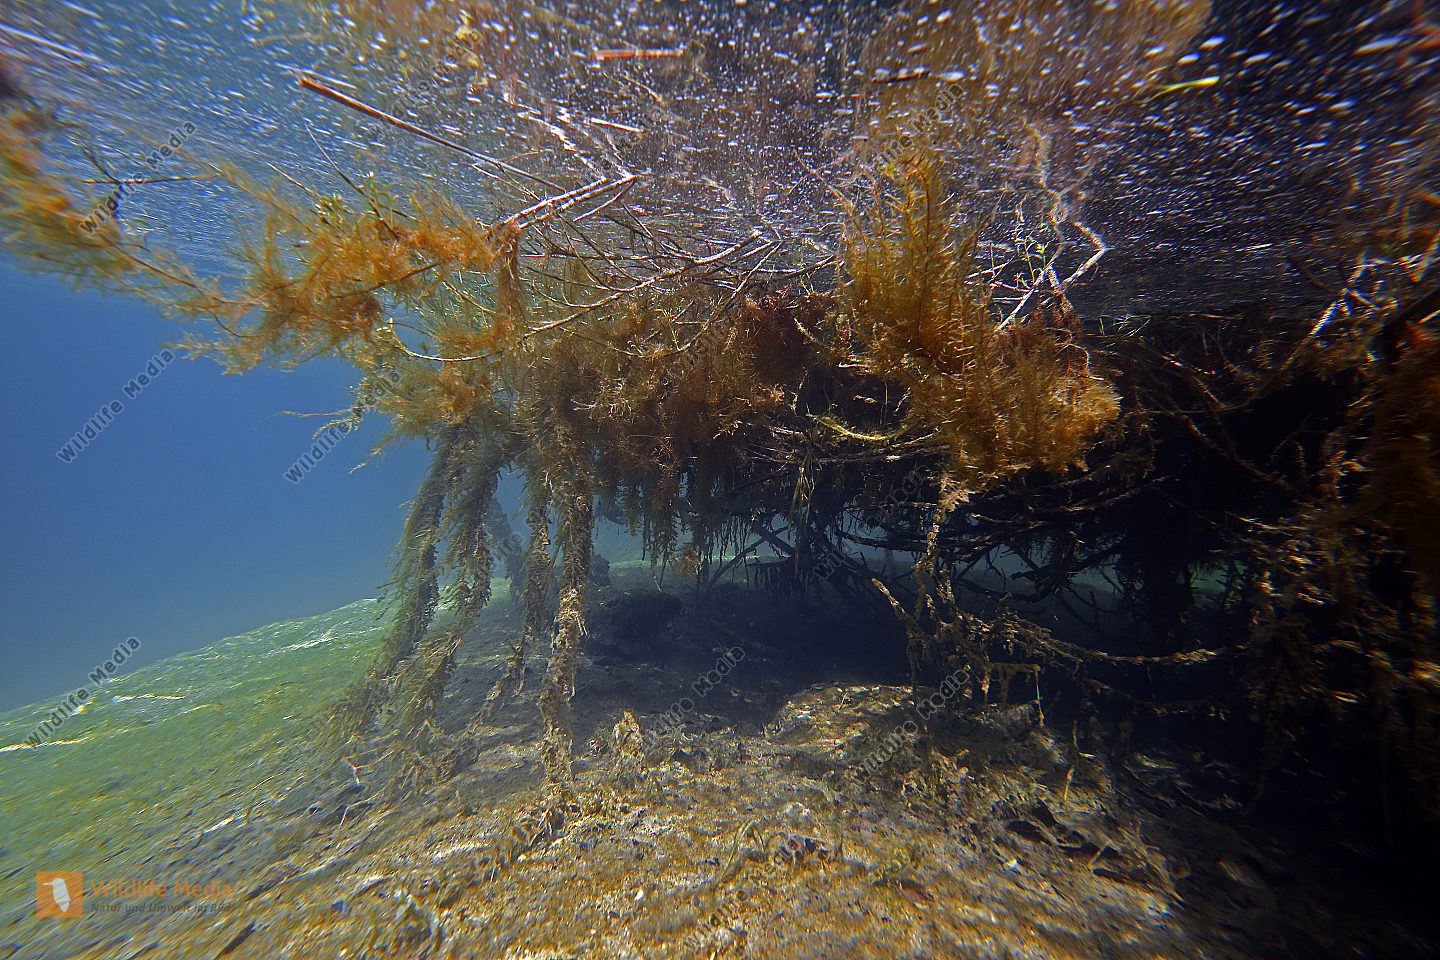 Unterwasser